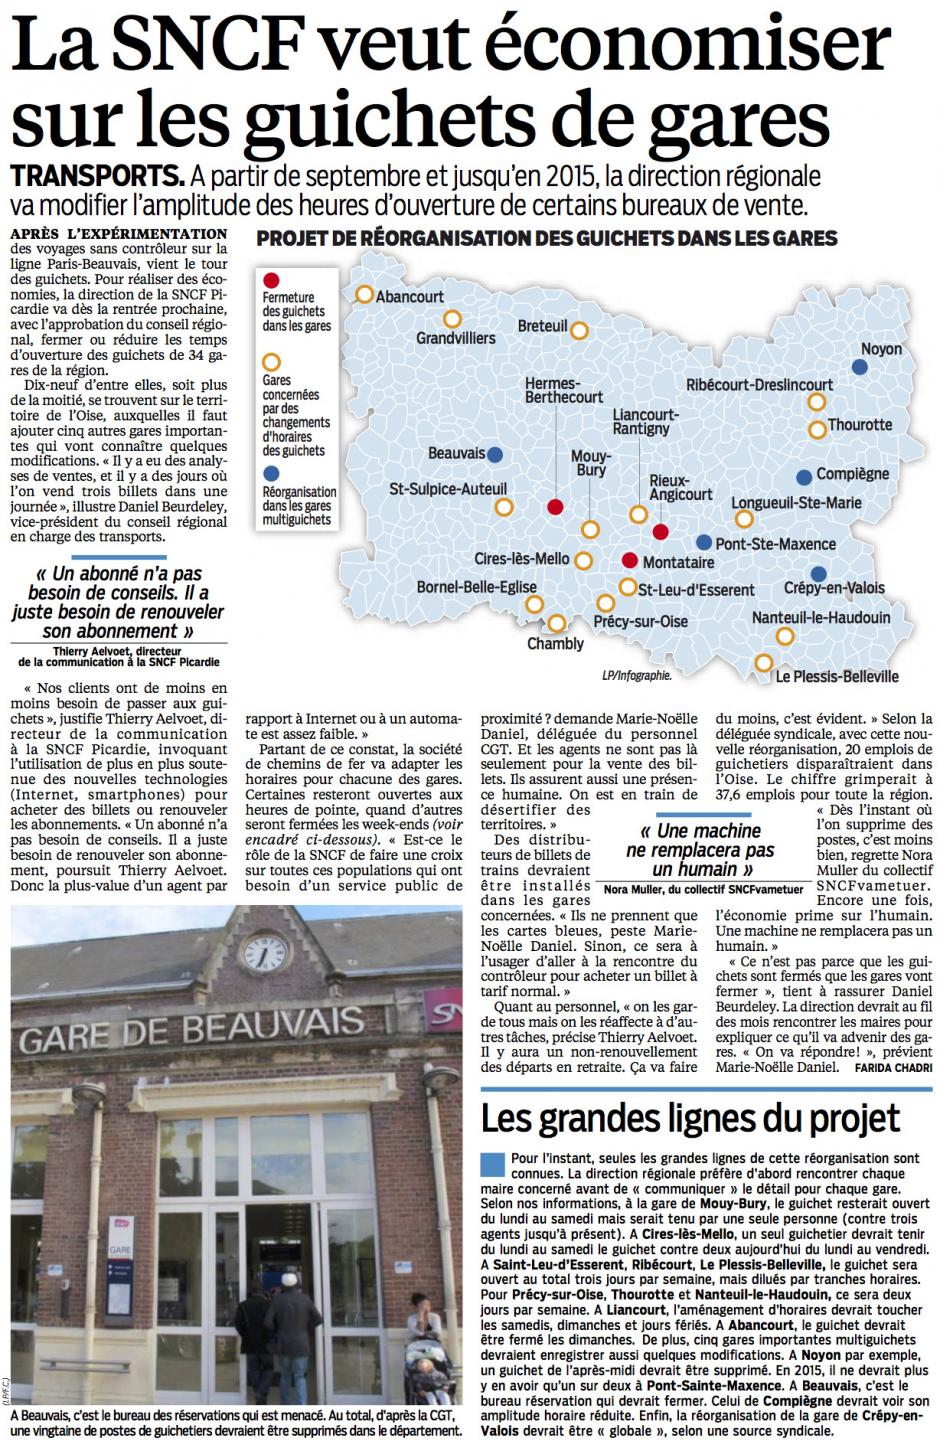 20140804-LeP-Oise-La SNCF veut économiser sur les guichets de gare